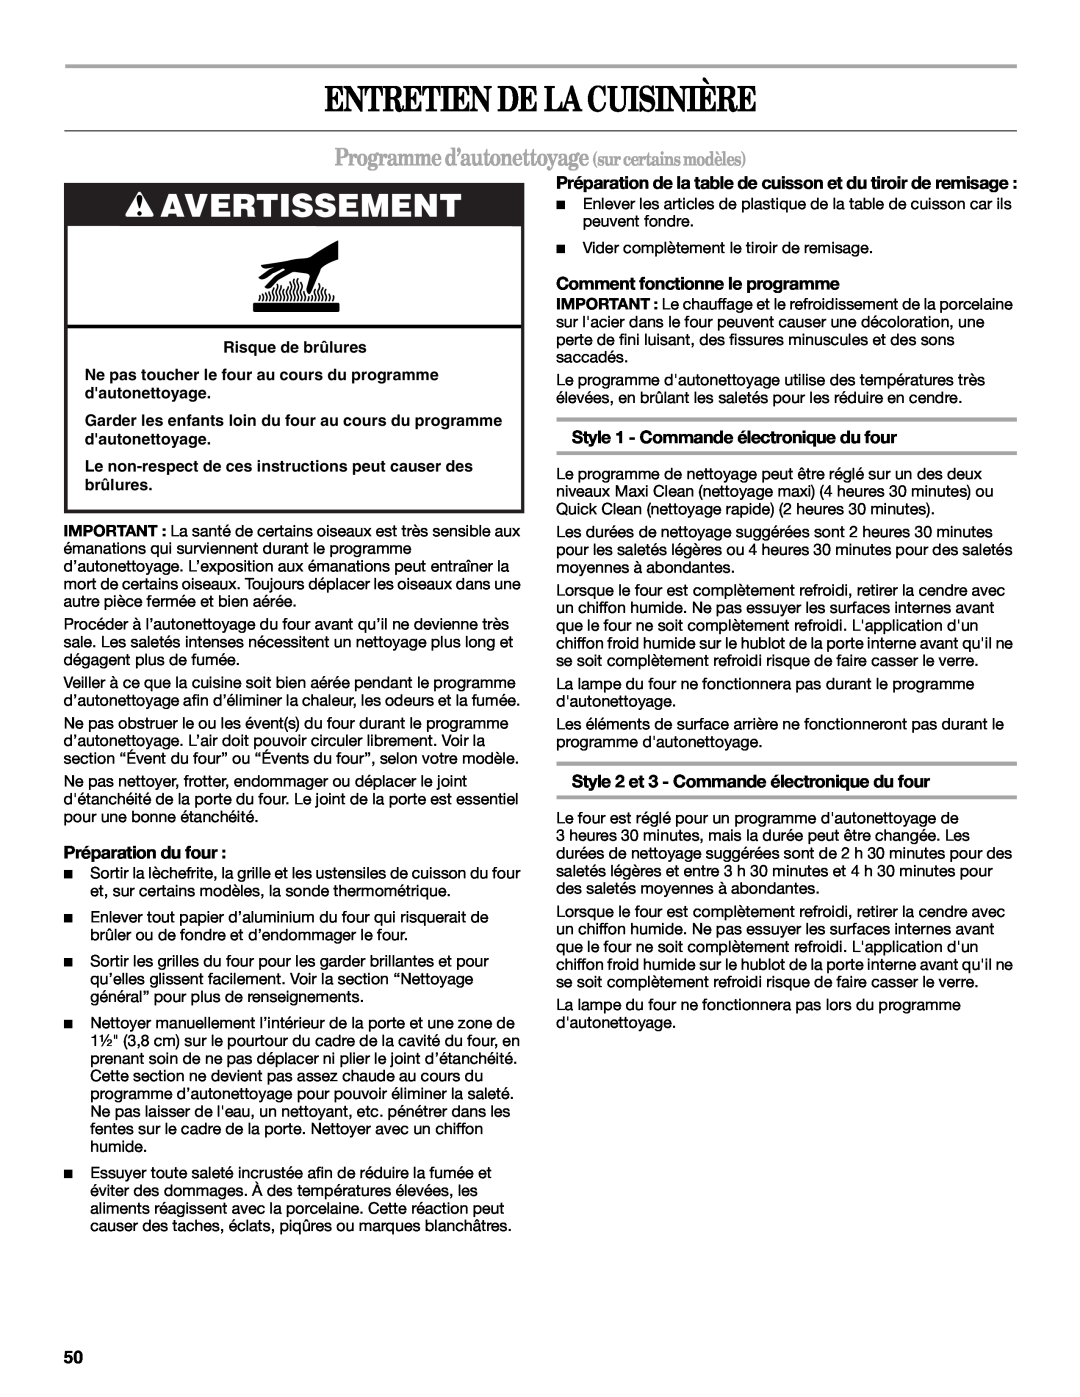 Whirlpool GERC4110PB0 manual Entretien De La Cuisinière, Programmed’autonettoyagesurcertainsmodèles, Préparation du four 